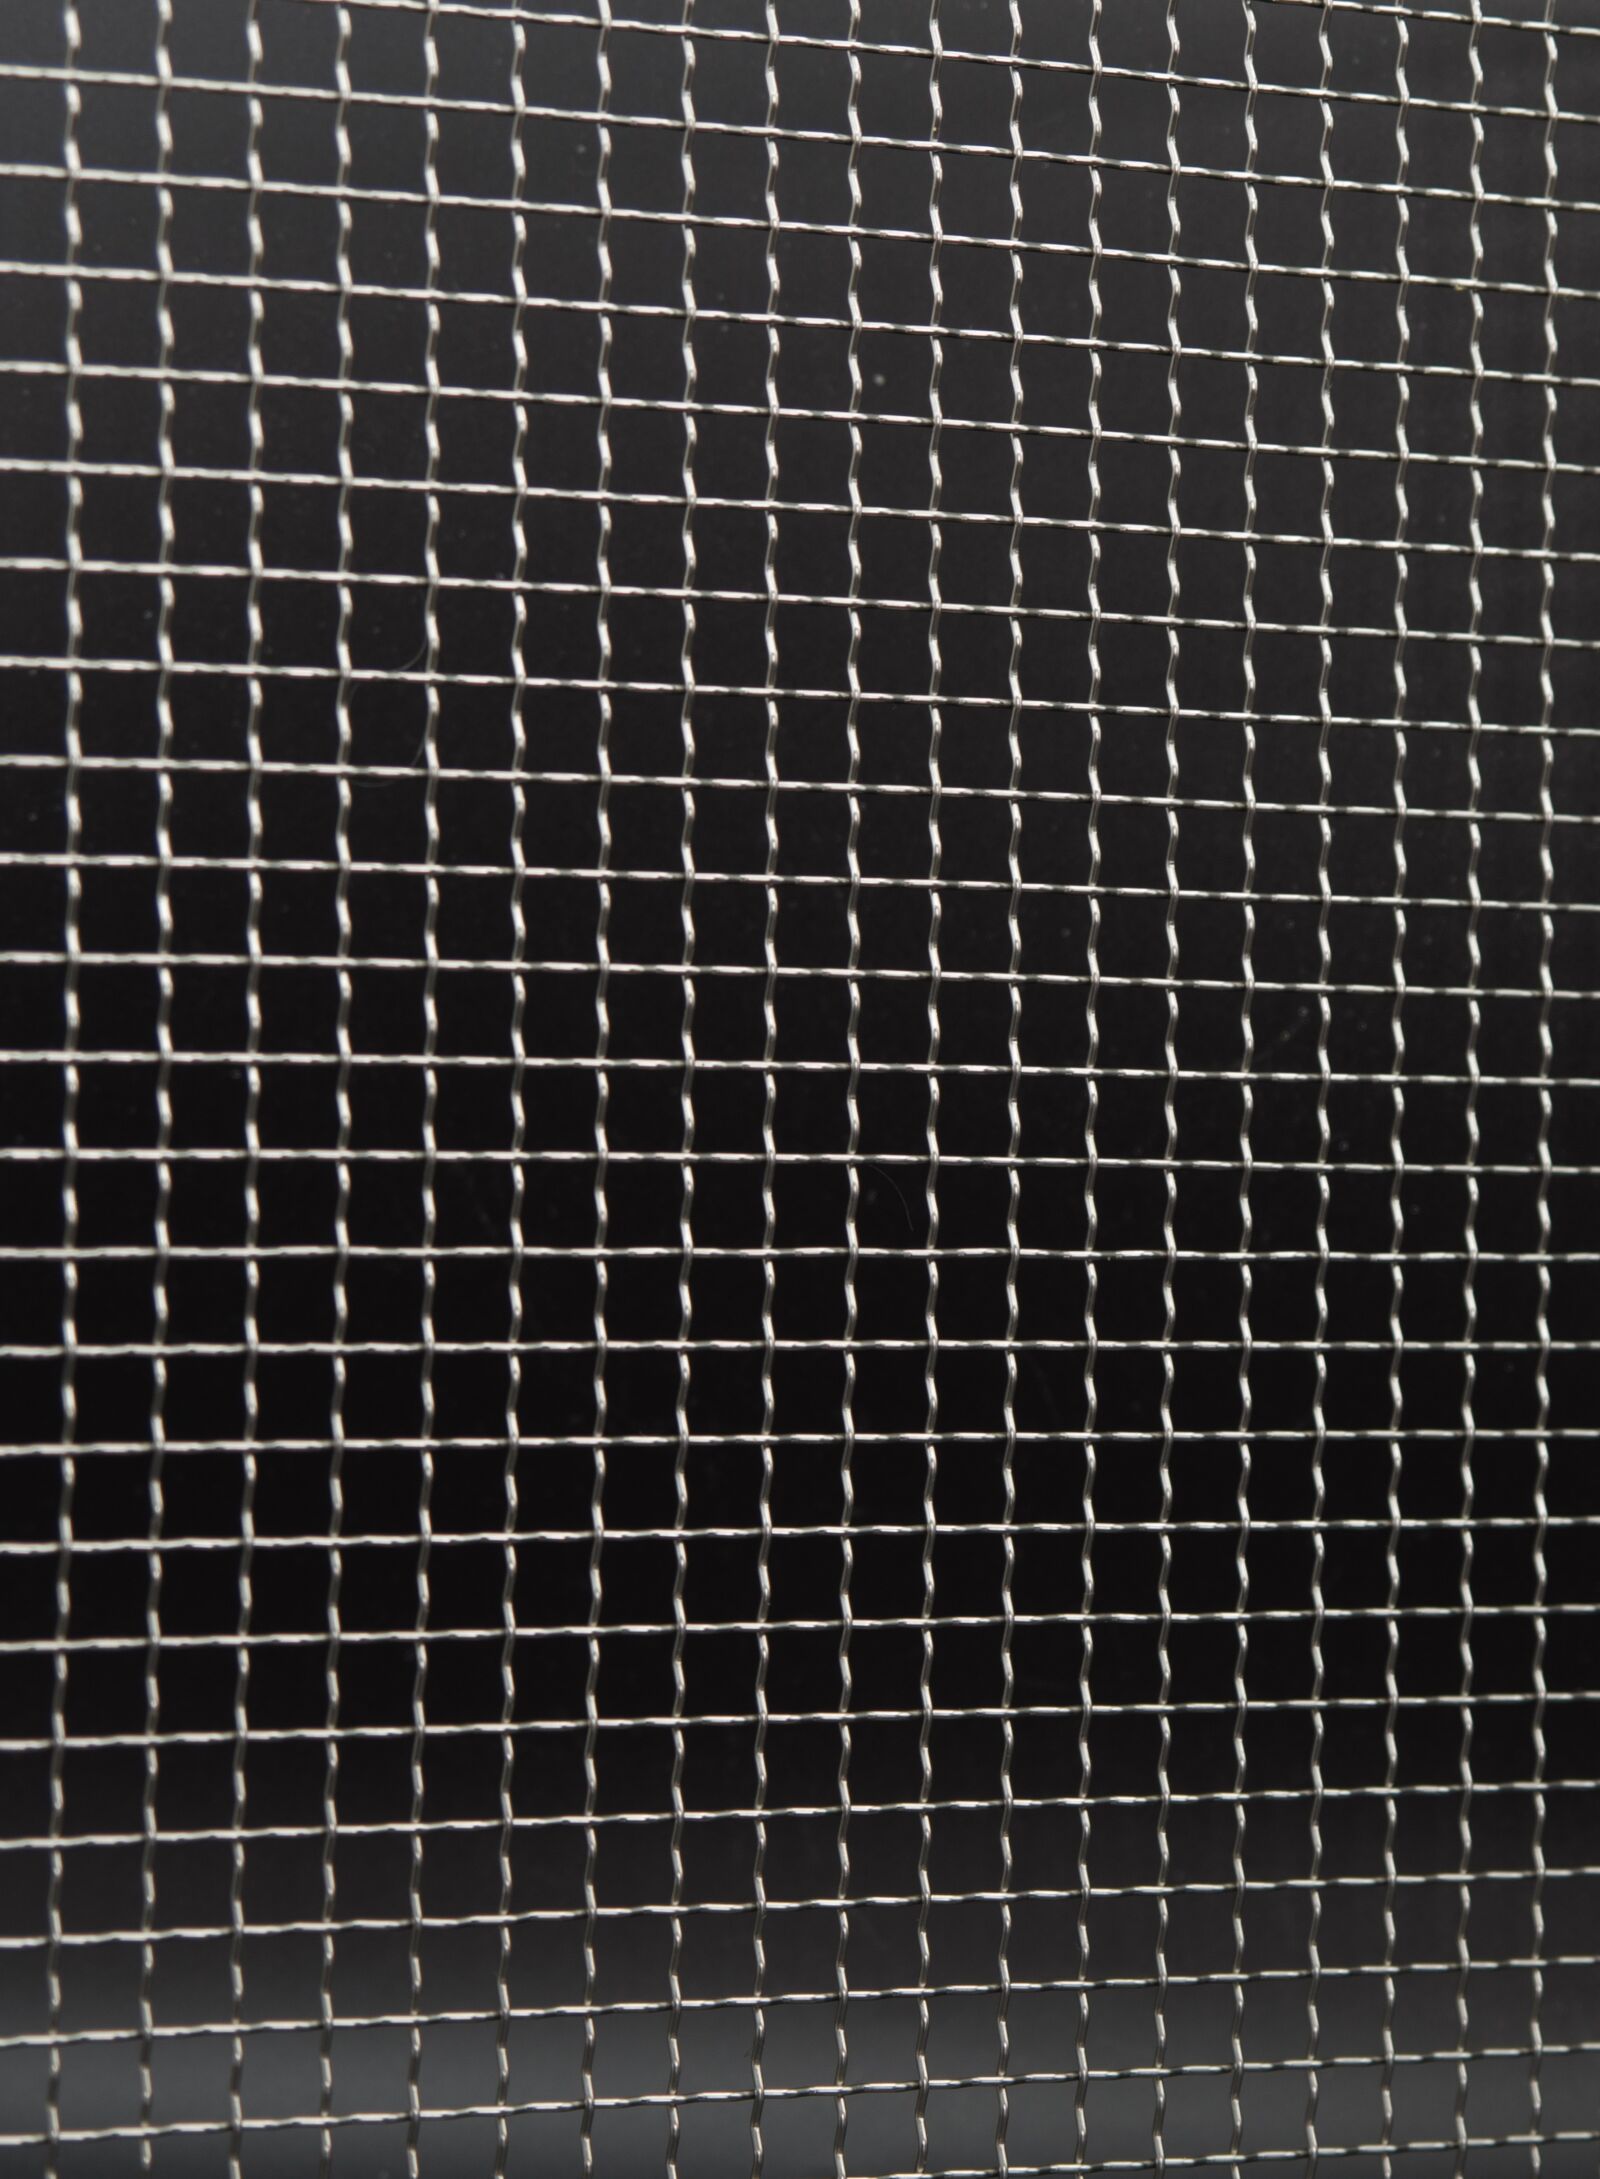 Pentax K-1 Mark II sample photo. Steel grid, metal grate photography